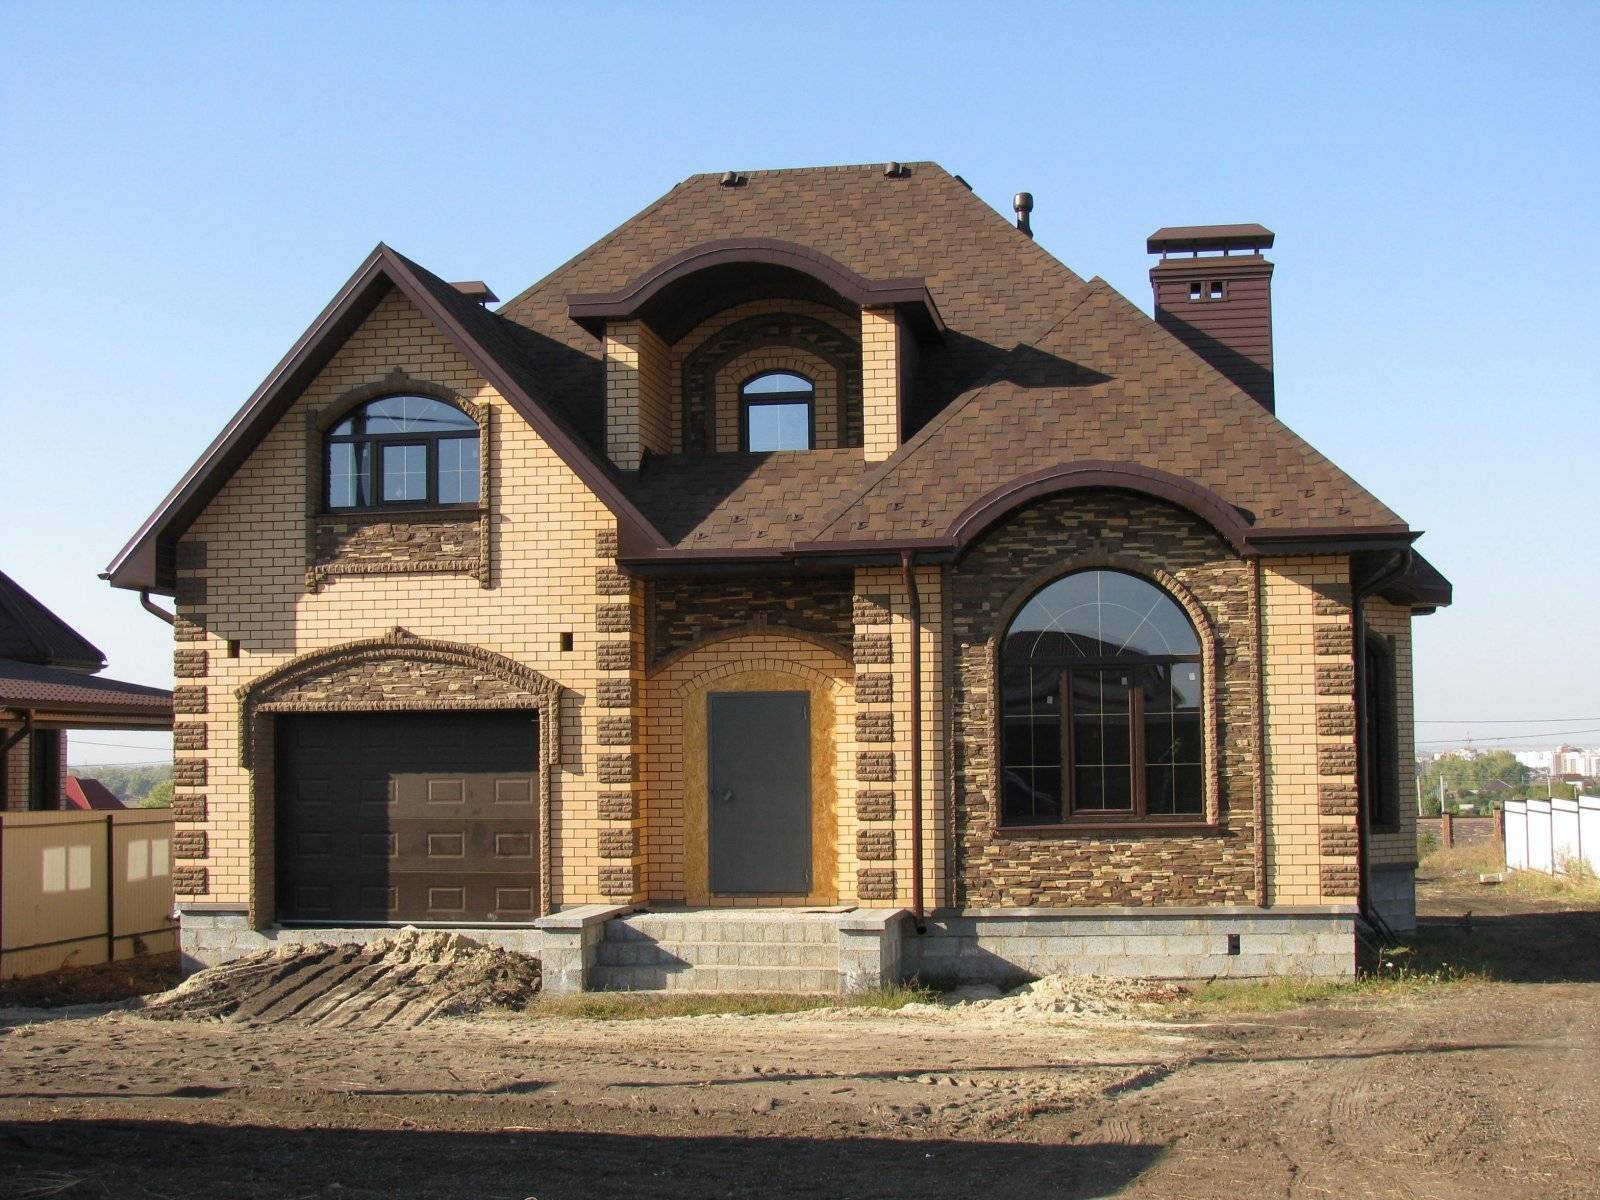 Сколько стоит построить свой дом?